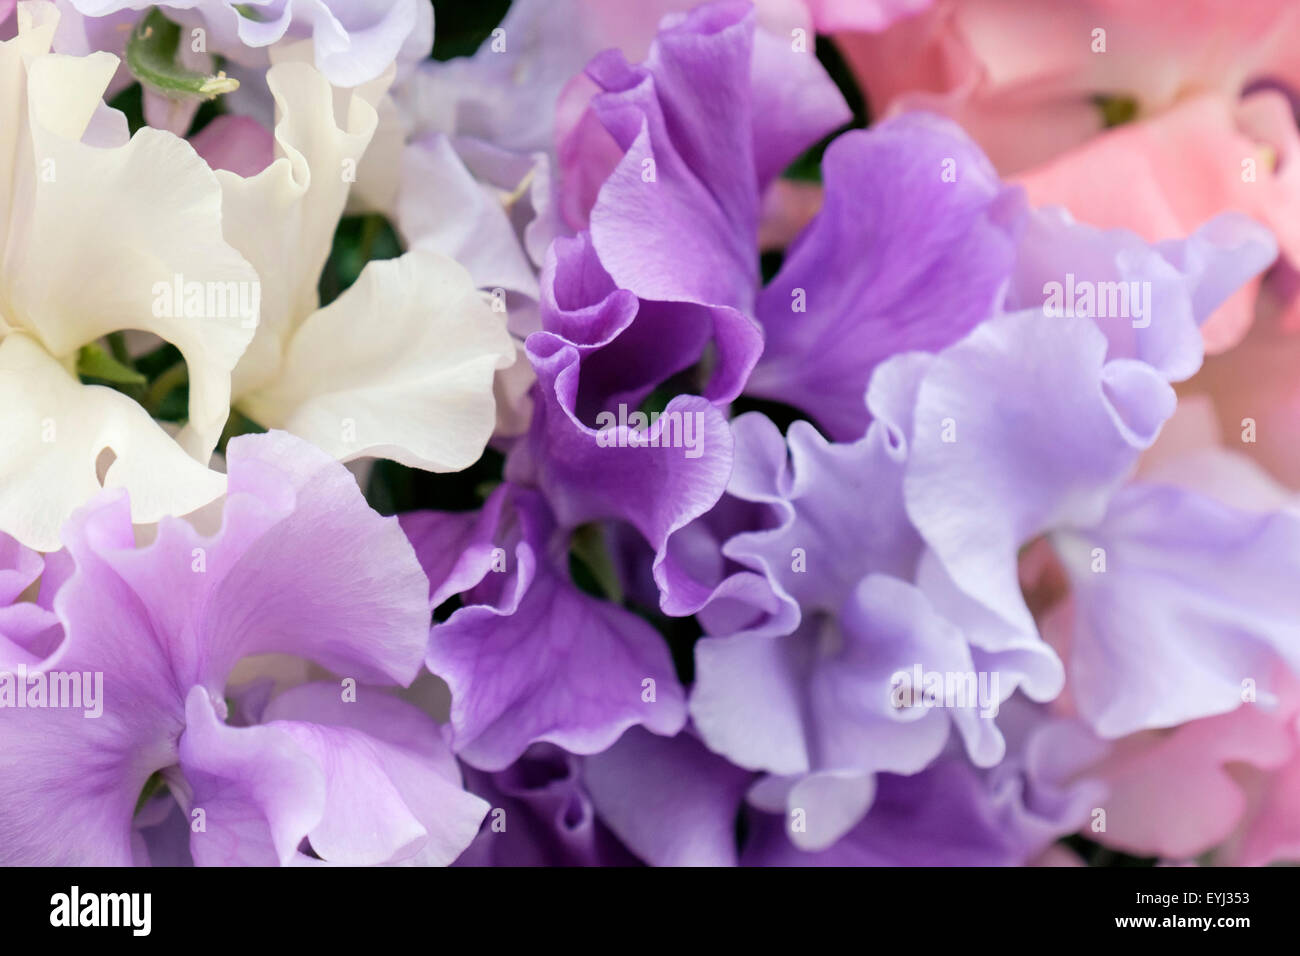 Affichage de pois sucré parfumé très 'fleurs' Spencer mixte. Angleterre Royaume-uni Grande-Bretagne Banque D'Images